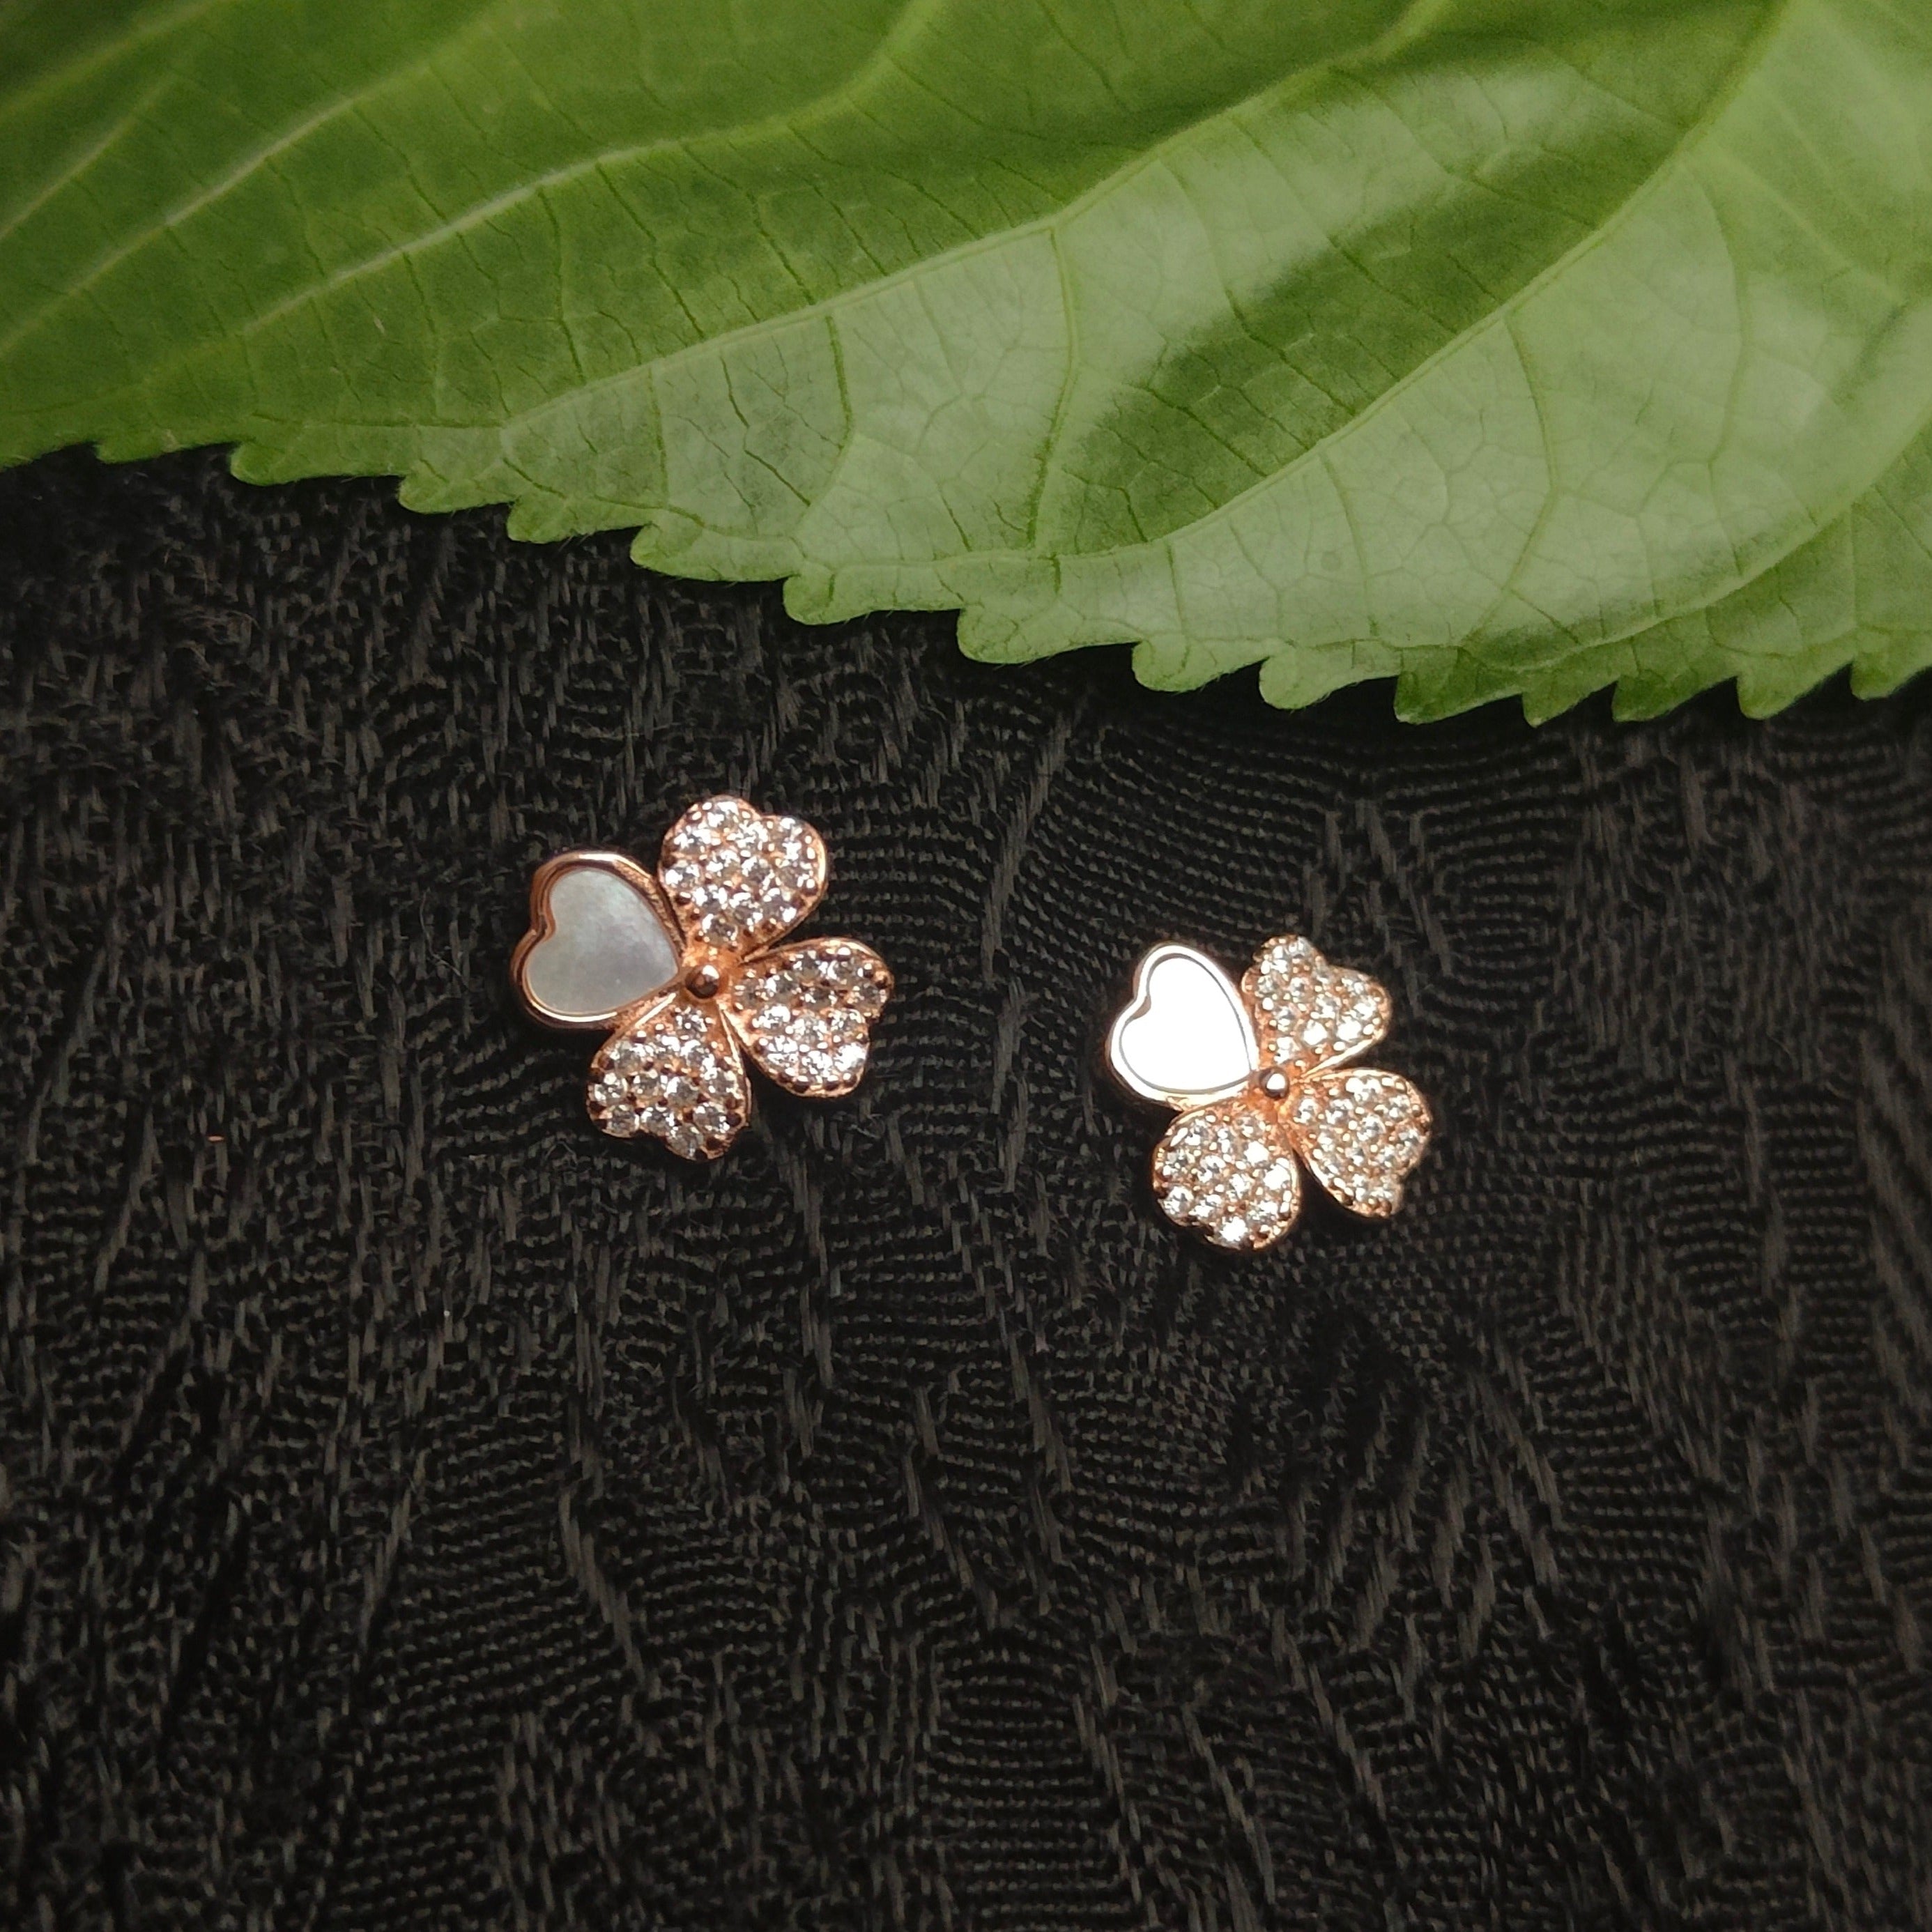 Flower with Zircon's Sterling Silver Earrings for Girls/Women